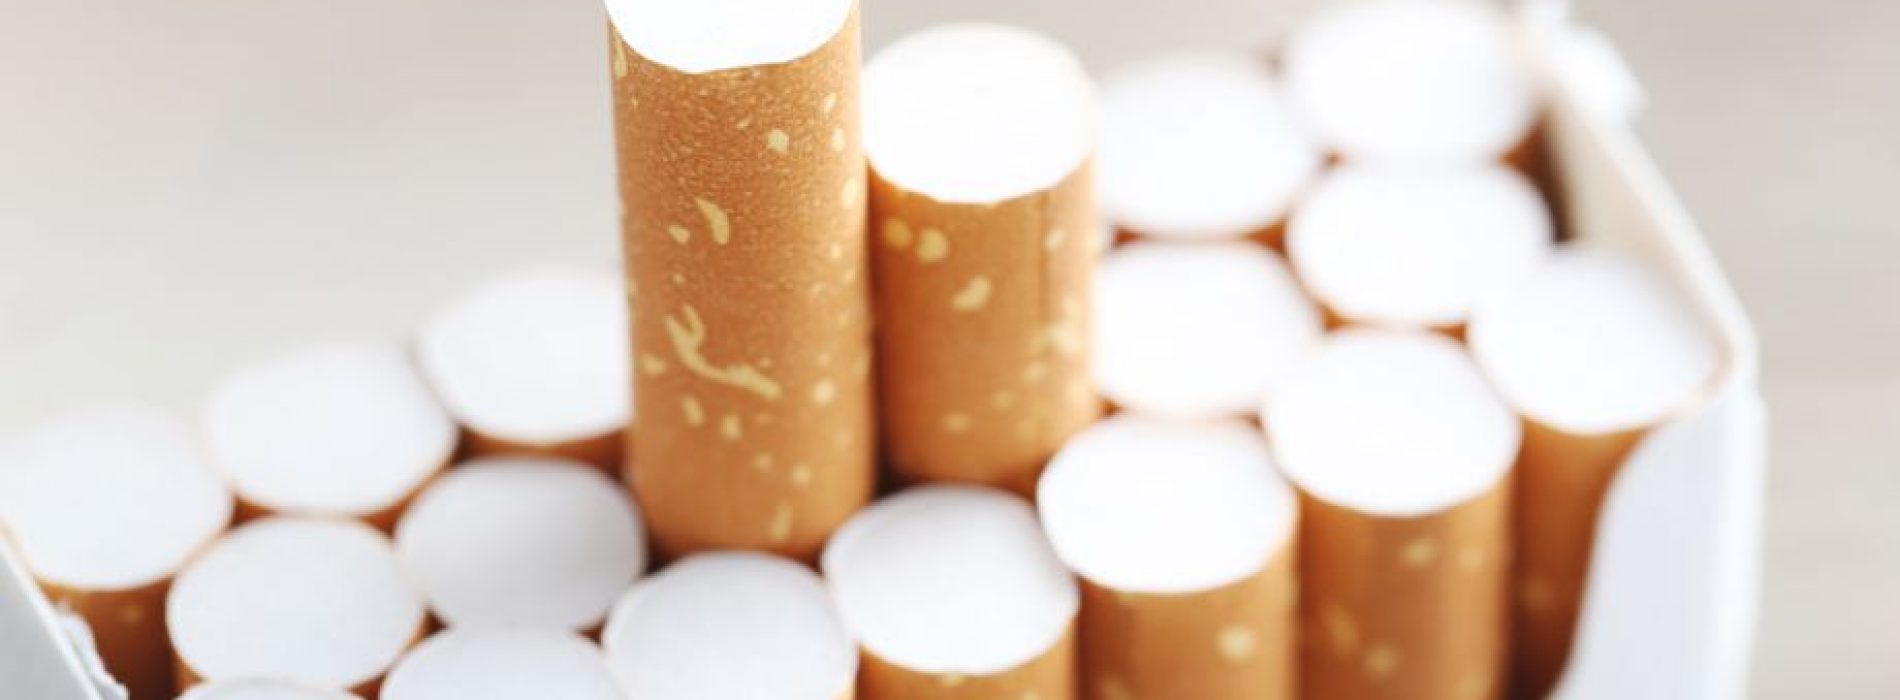 Rokers bedrogen: tabaksfabrikanten kennen gevaar ‘sjoemelsigaret’ al 35 jaar